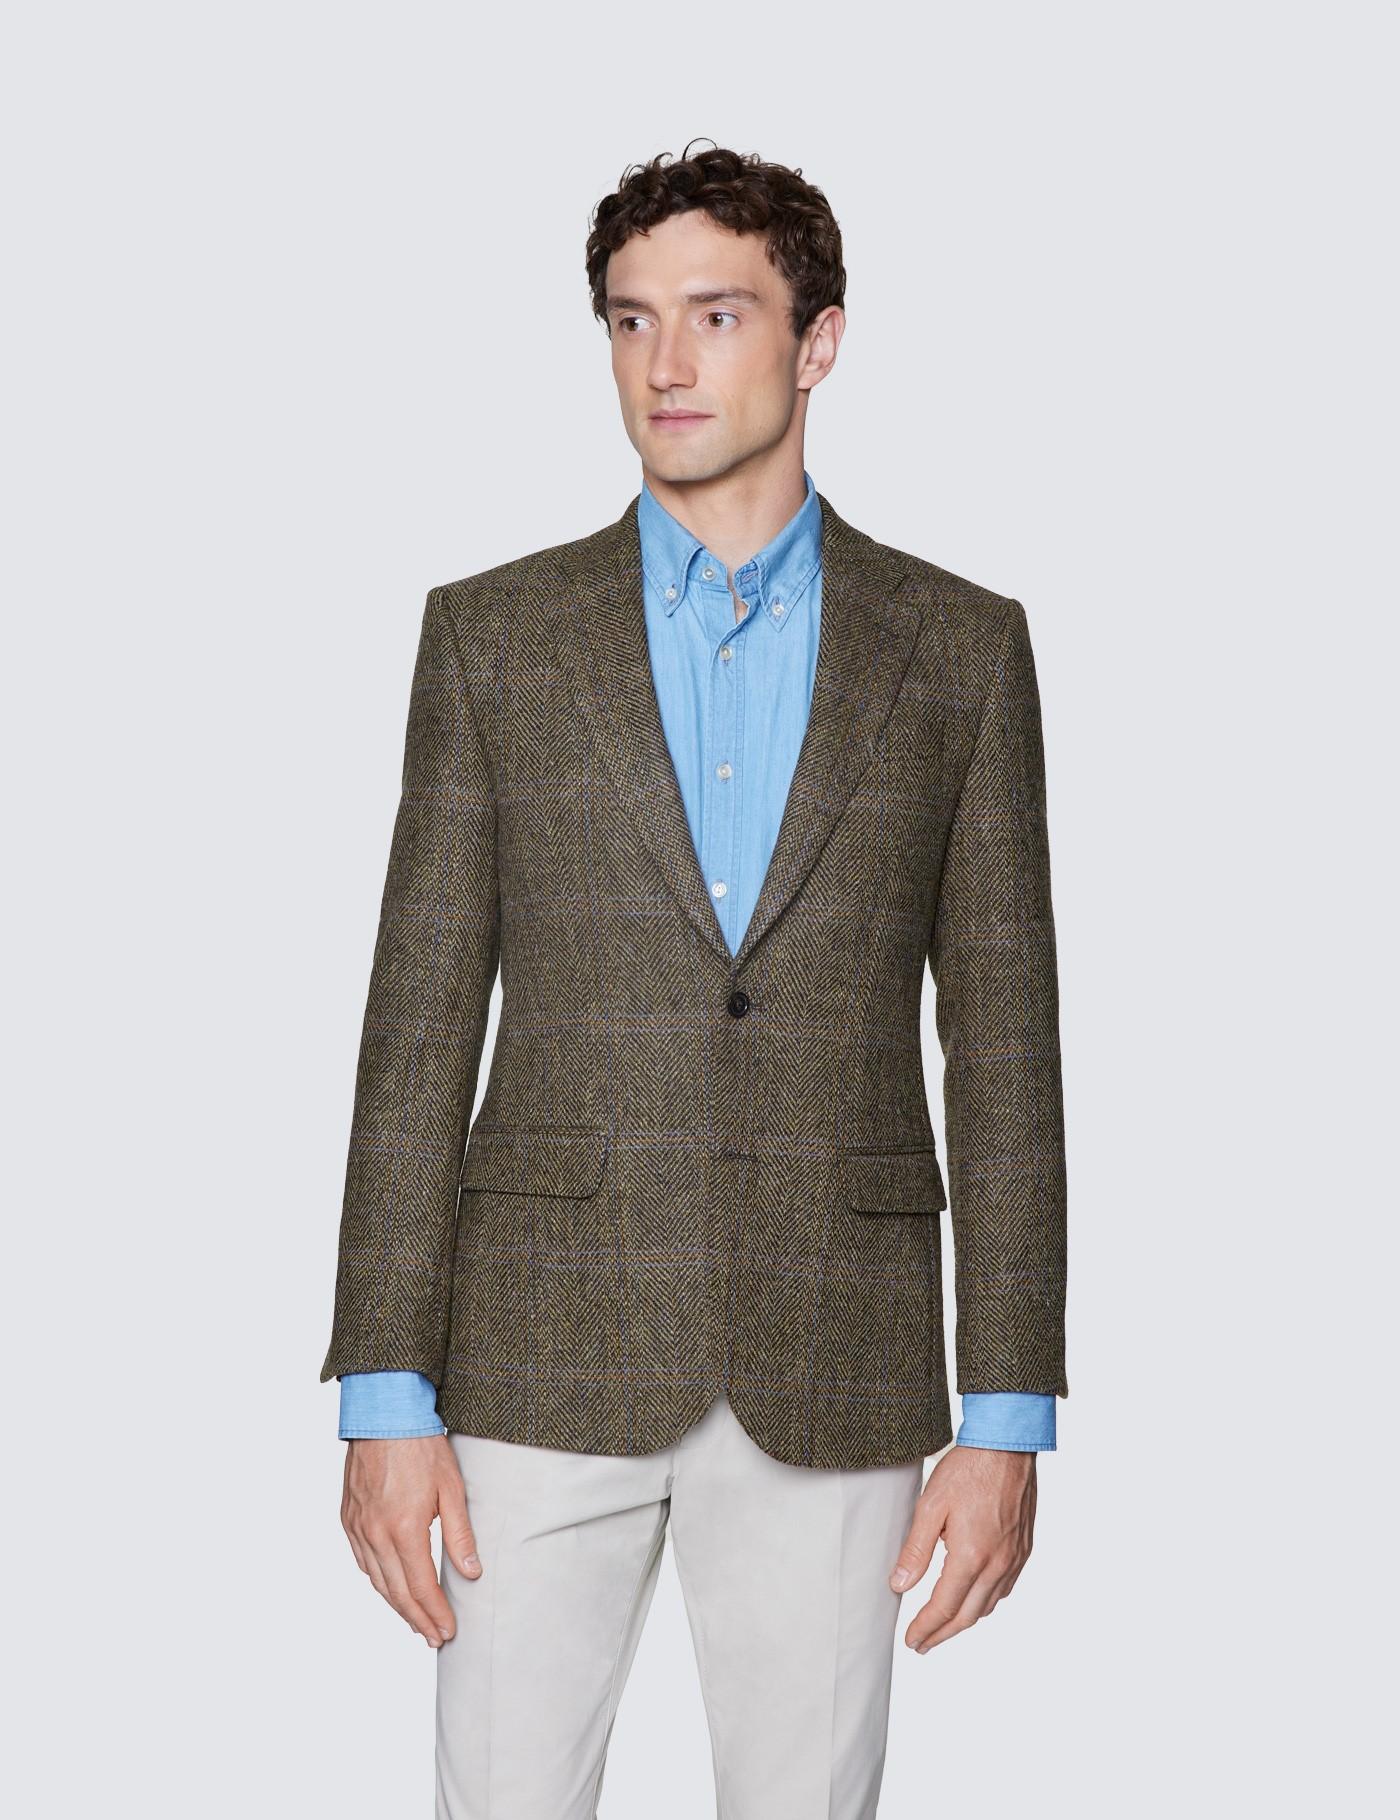 Harris Tweed Mens Brown Tweed Waistcoat Regular Fit 100% Wool Windowpane Check 